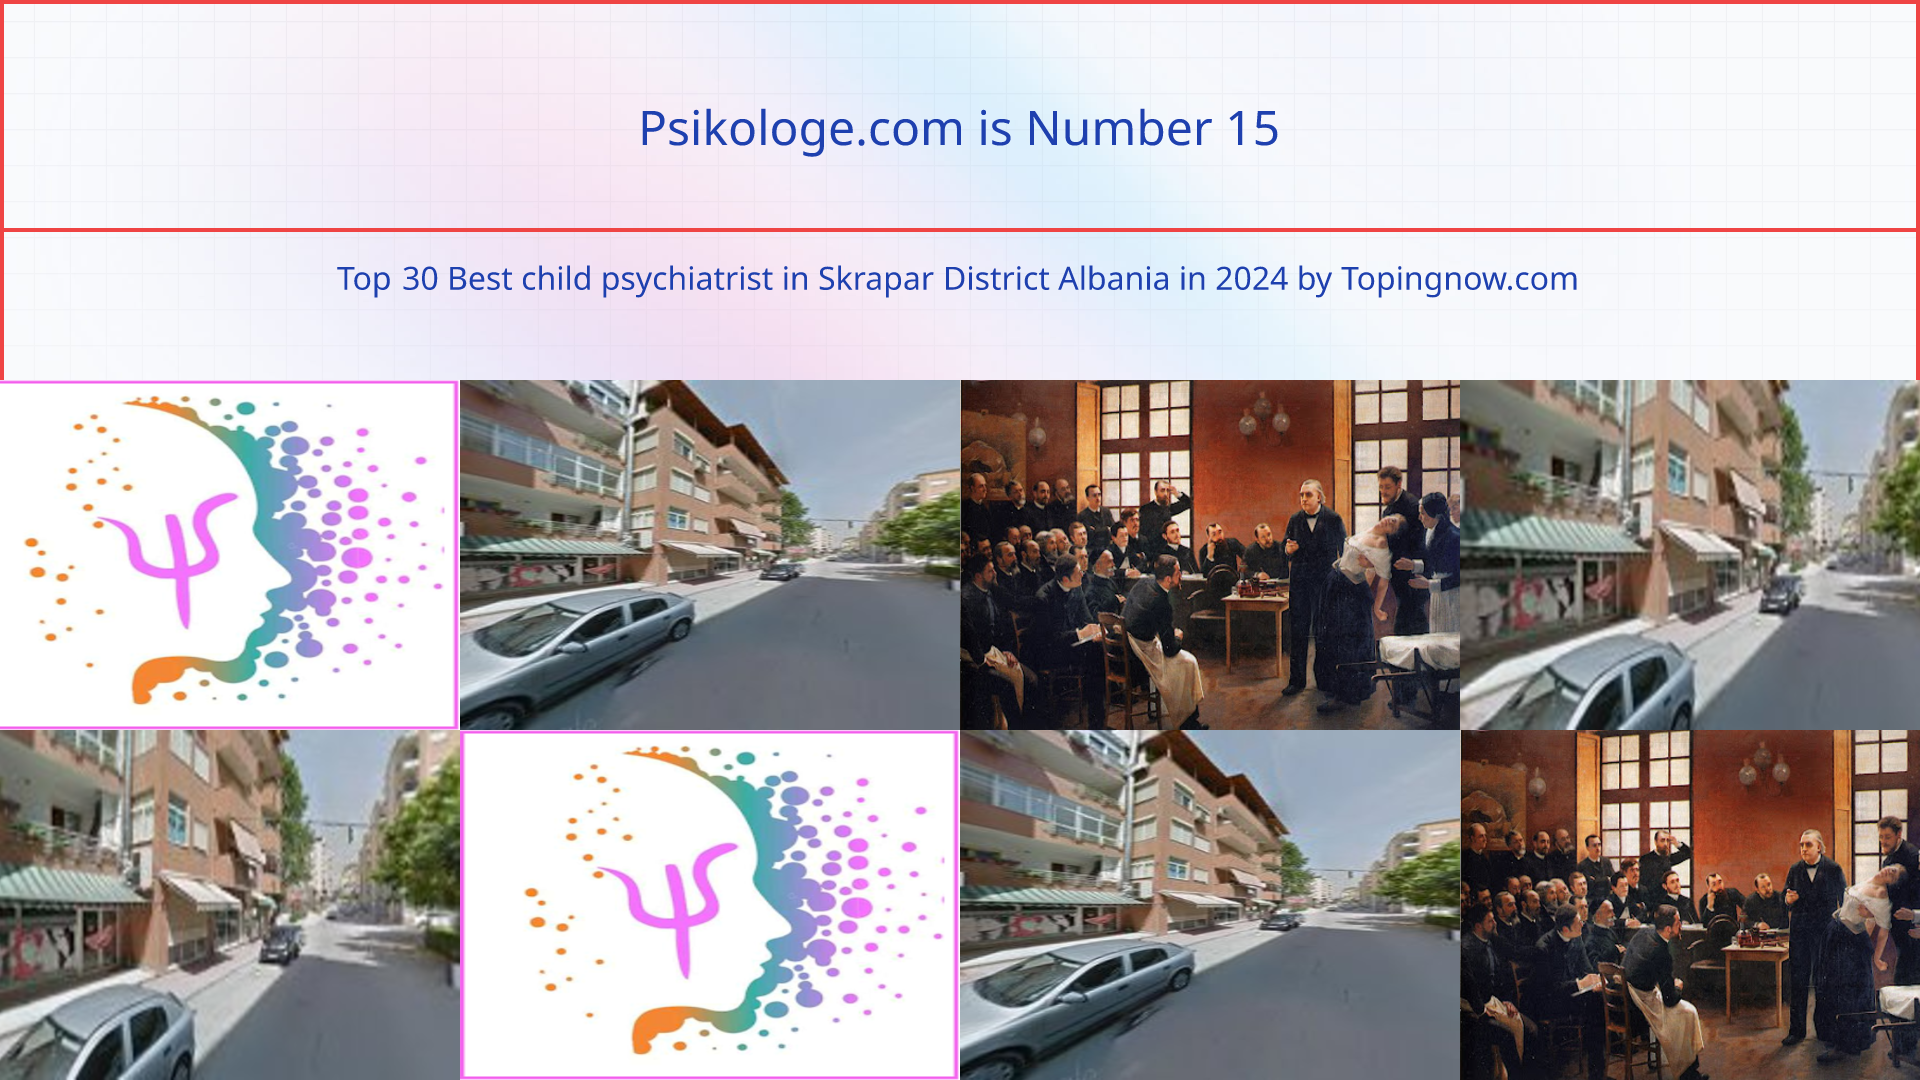 Psikologe.com: Top 30 Best child psychiatrist in Skrapar District Albania in 2024